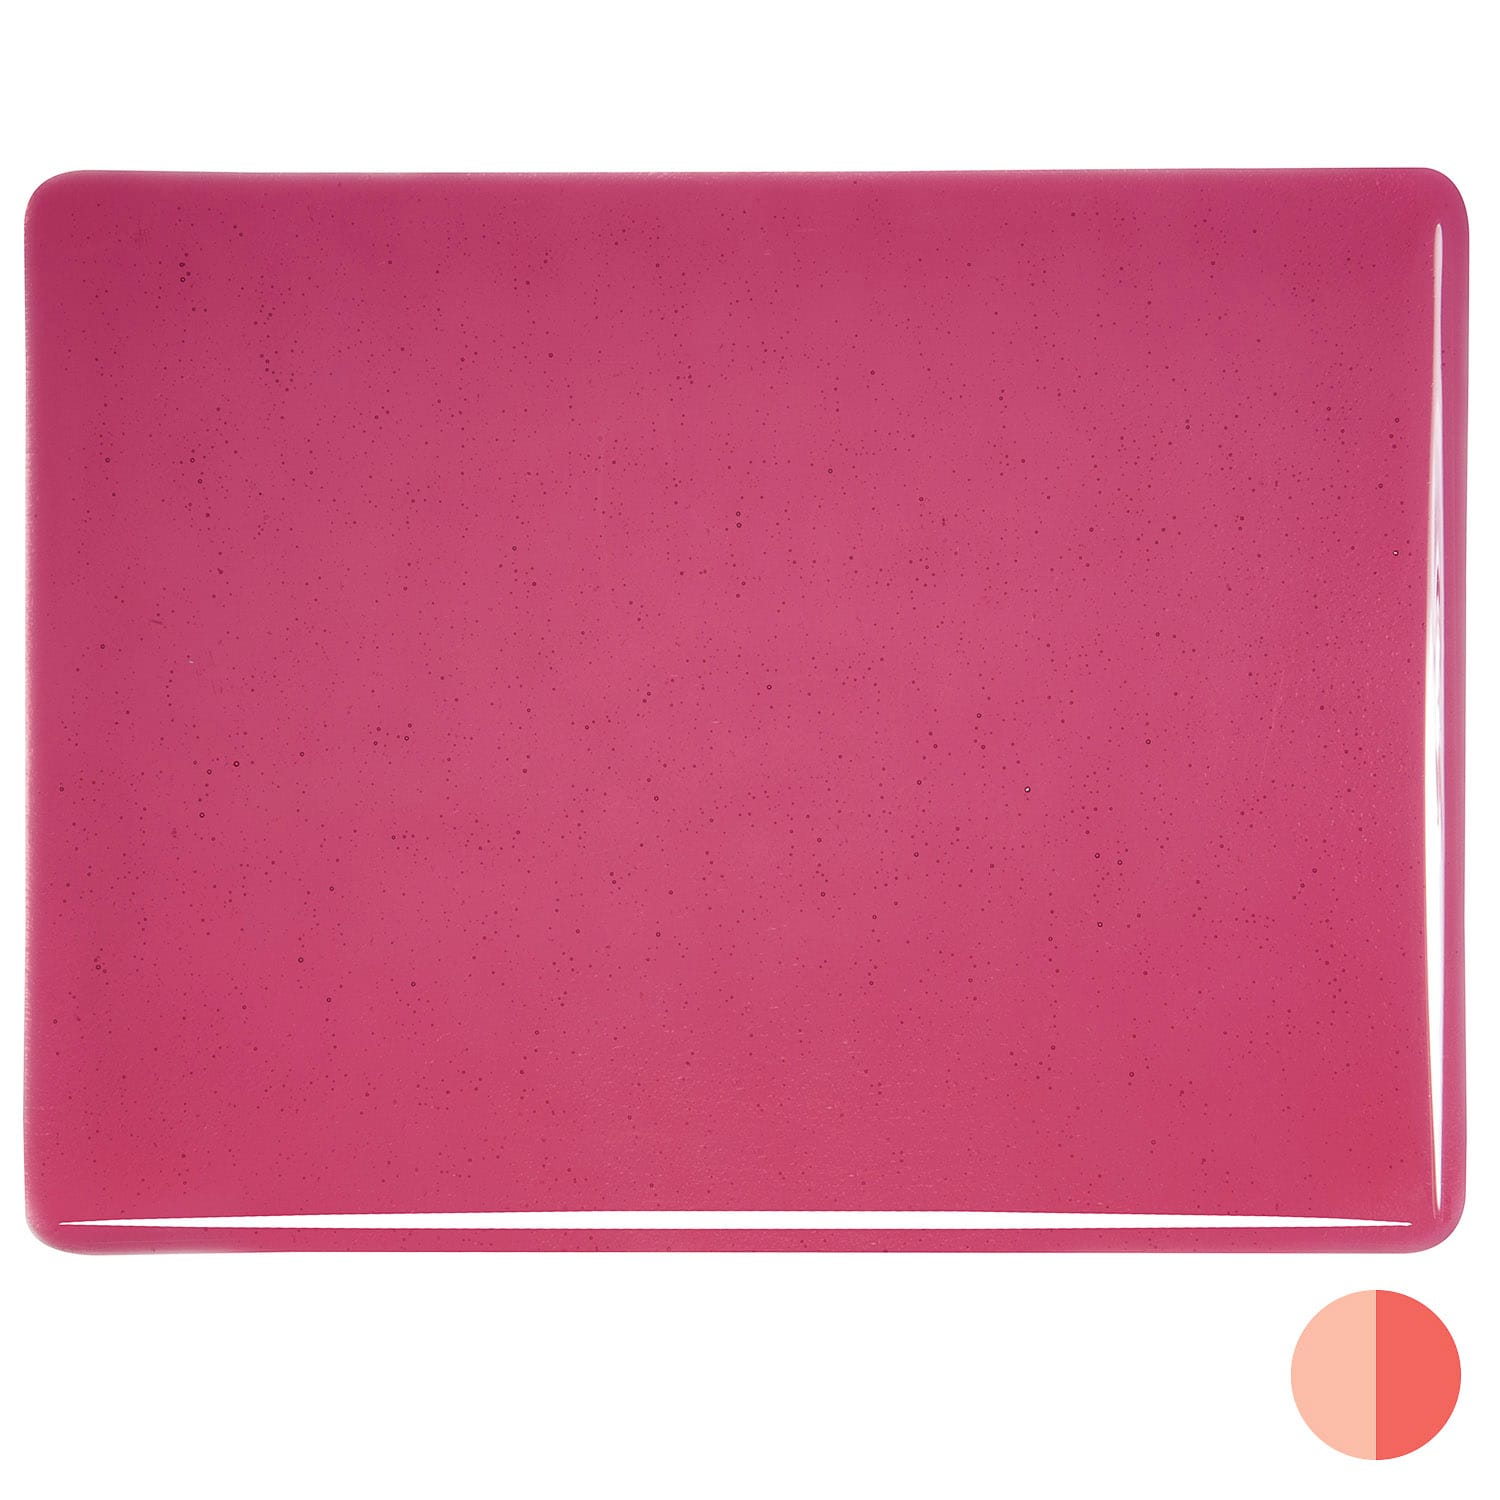 Bullseye COE90 Fusing Glass 001311 Cranberry Pink Handy Sheet